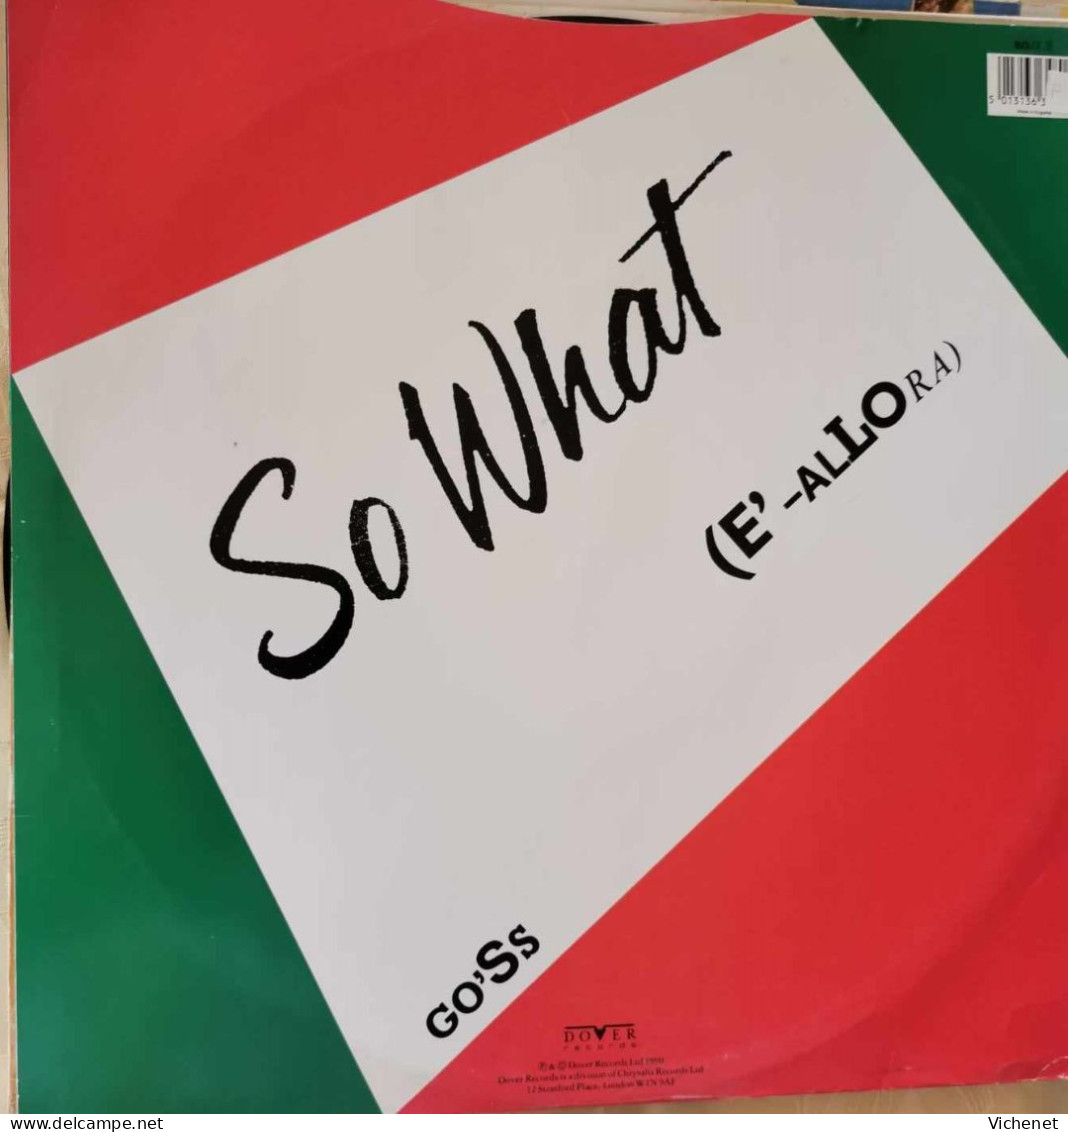 Go'Ss – So What (E'-Allora) - Maxi - 45 Rpm - Maxi-Single